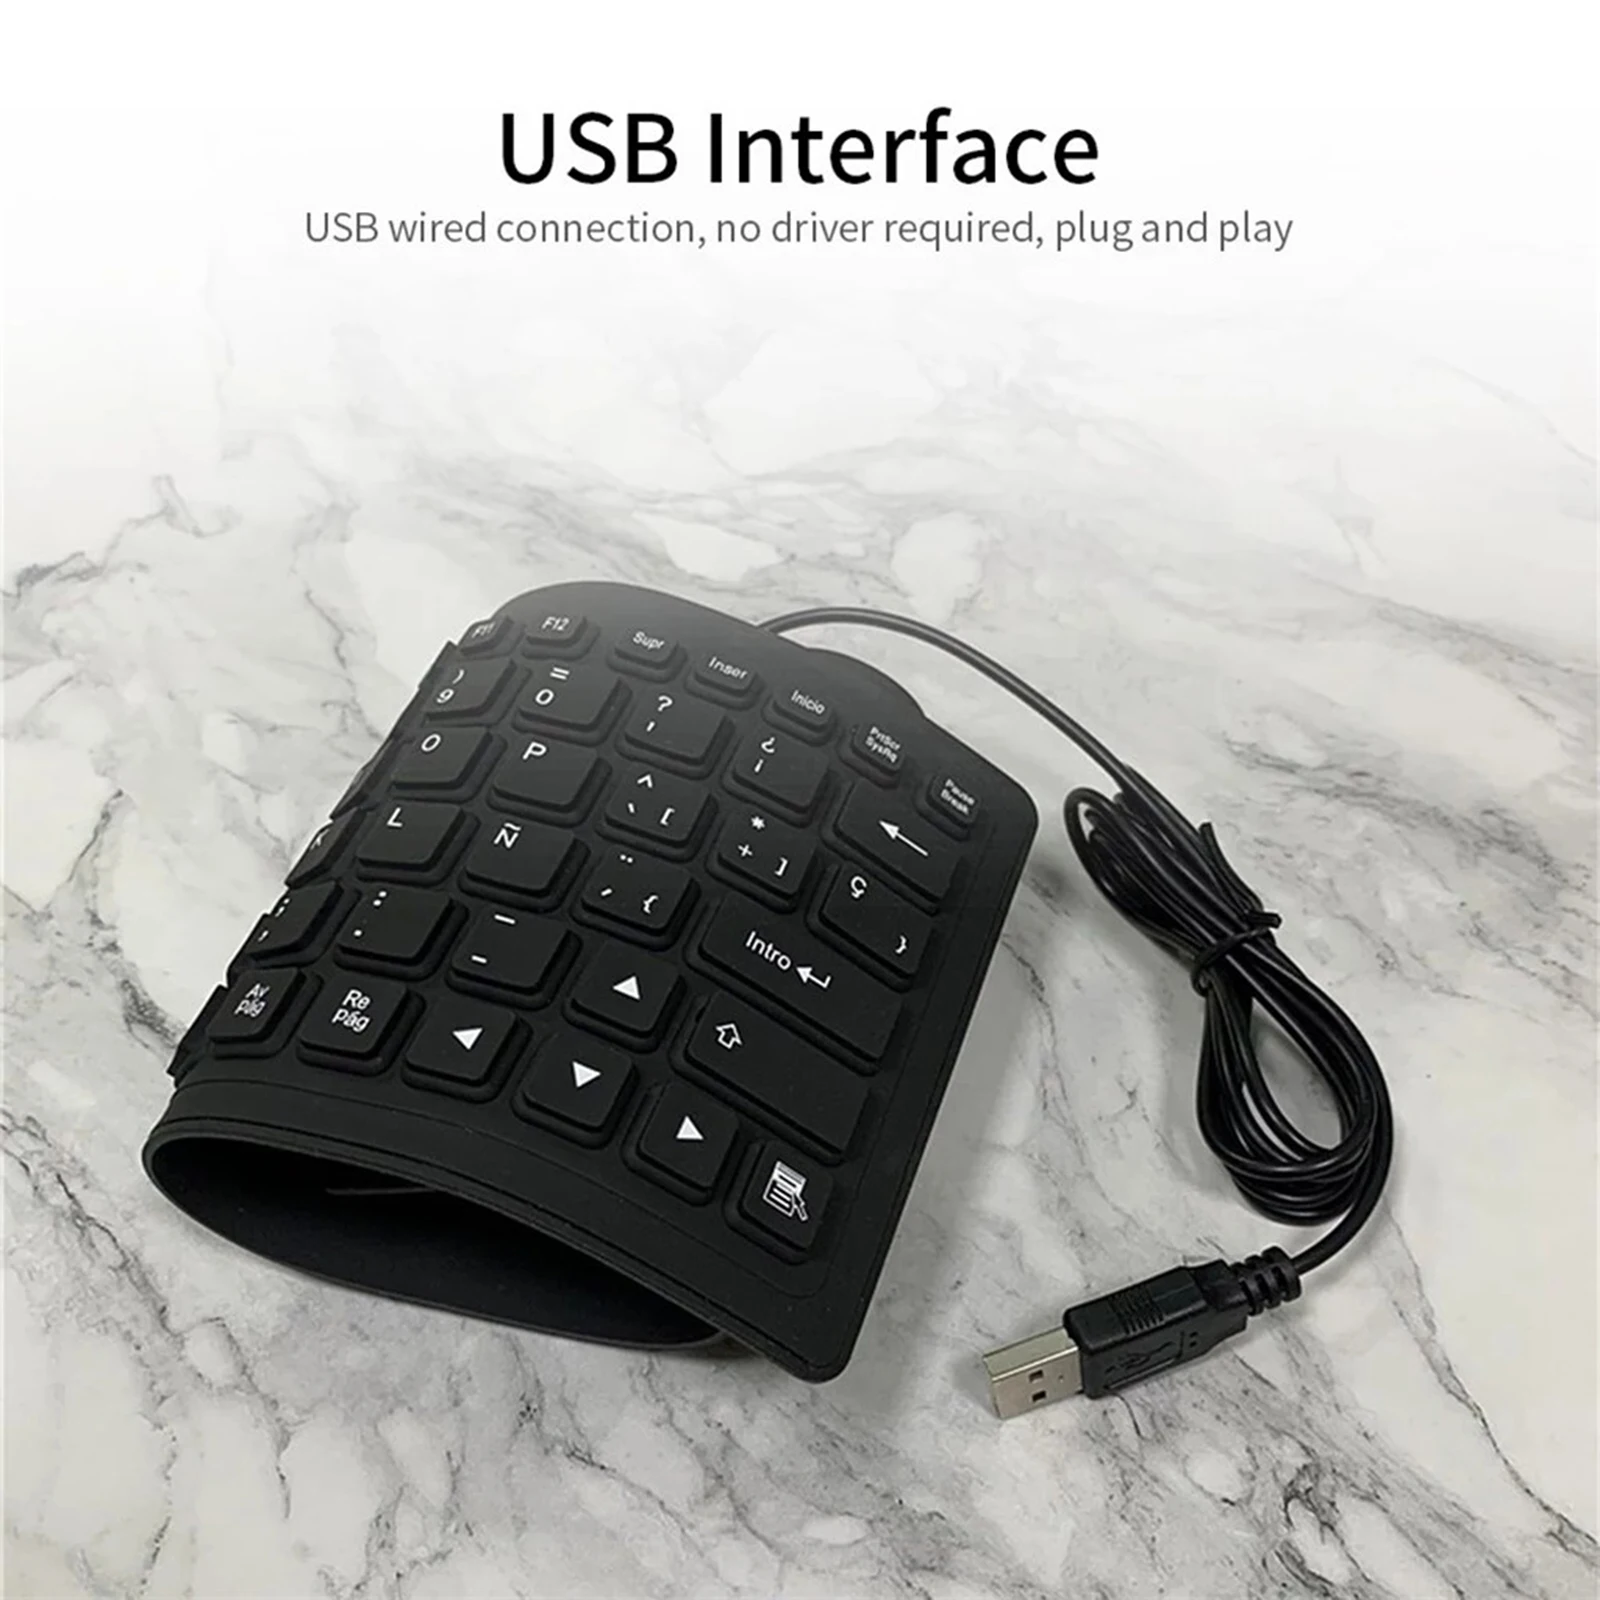 Foldable Spanish Keyboard Waterproof Rollup Keyboard for Desktop Laptop